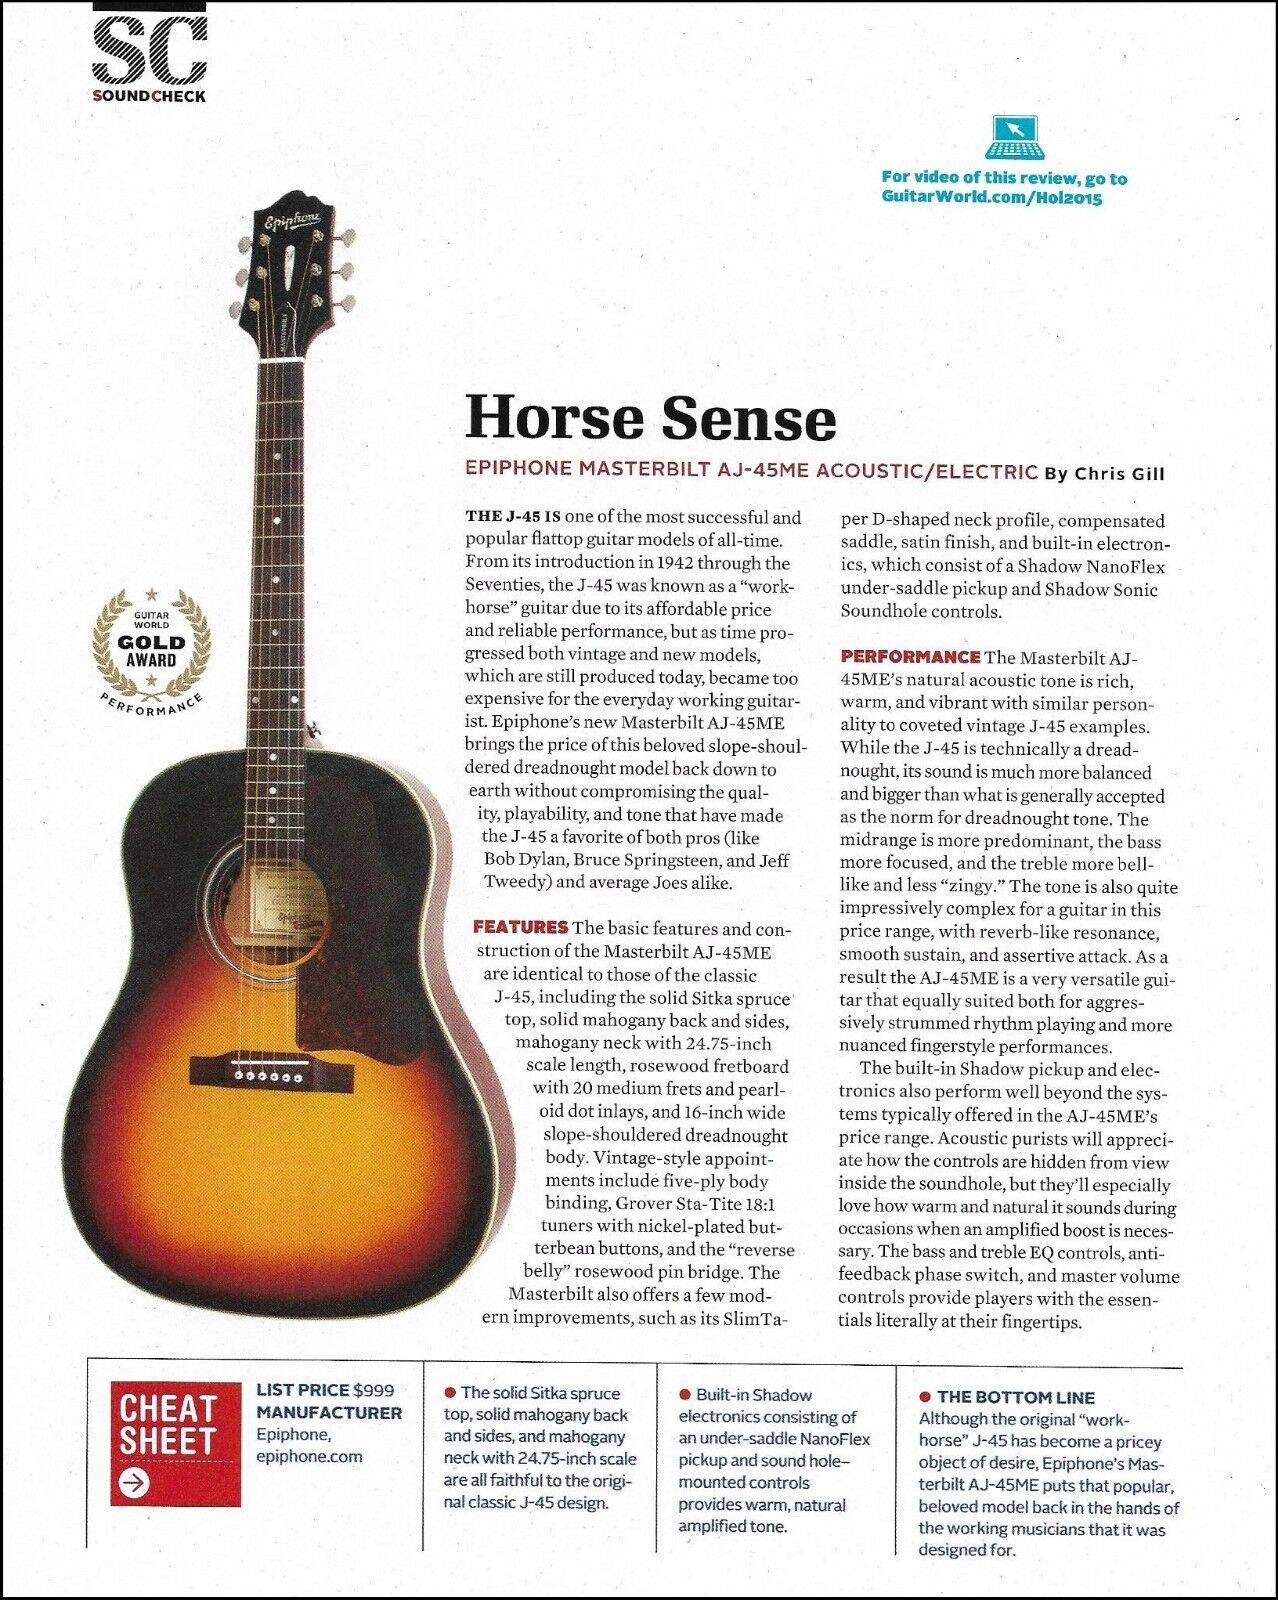 Epiphone Masterbilt AJ-45ME acoustic guitar 8 x 11 sound check review article